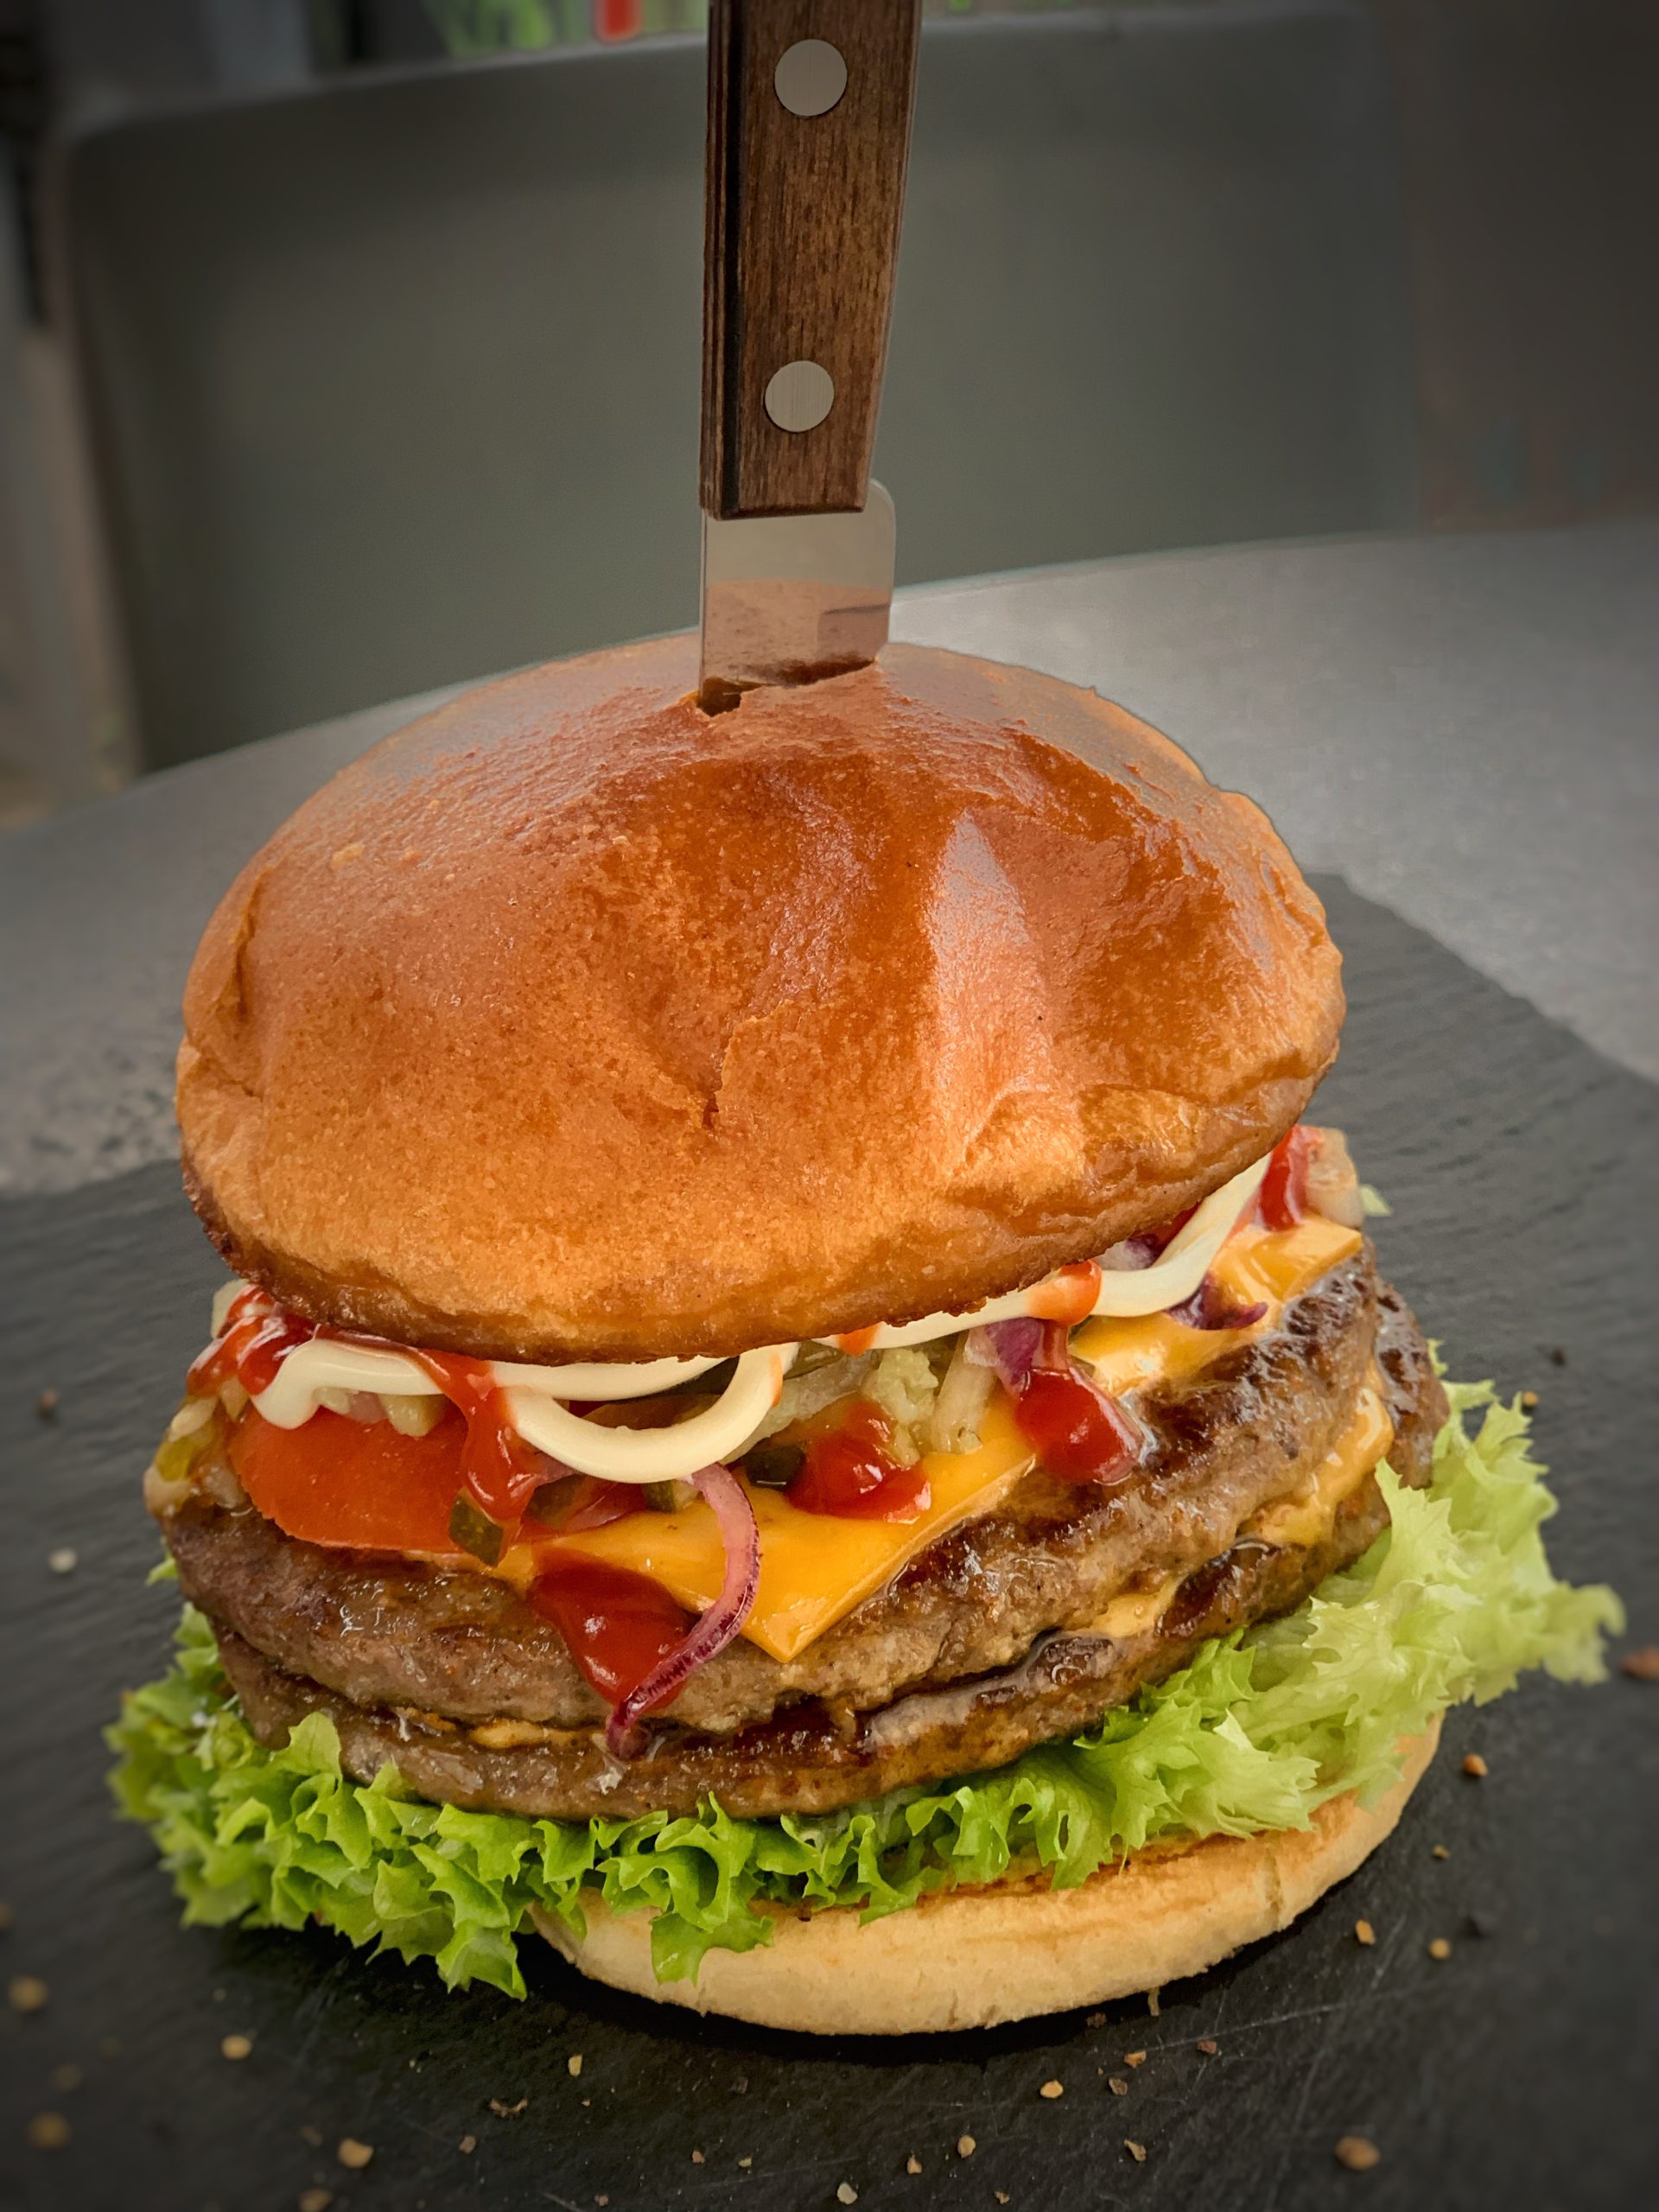 Hausgemachter Burger mit Käse und doppeltem Fleisch-Pattys. Ein Steakmesser steckt in der Mitte des Burgers, der auf einer Schieferplatte serviert wird.